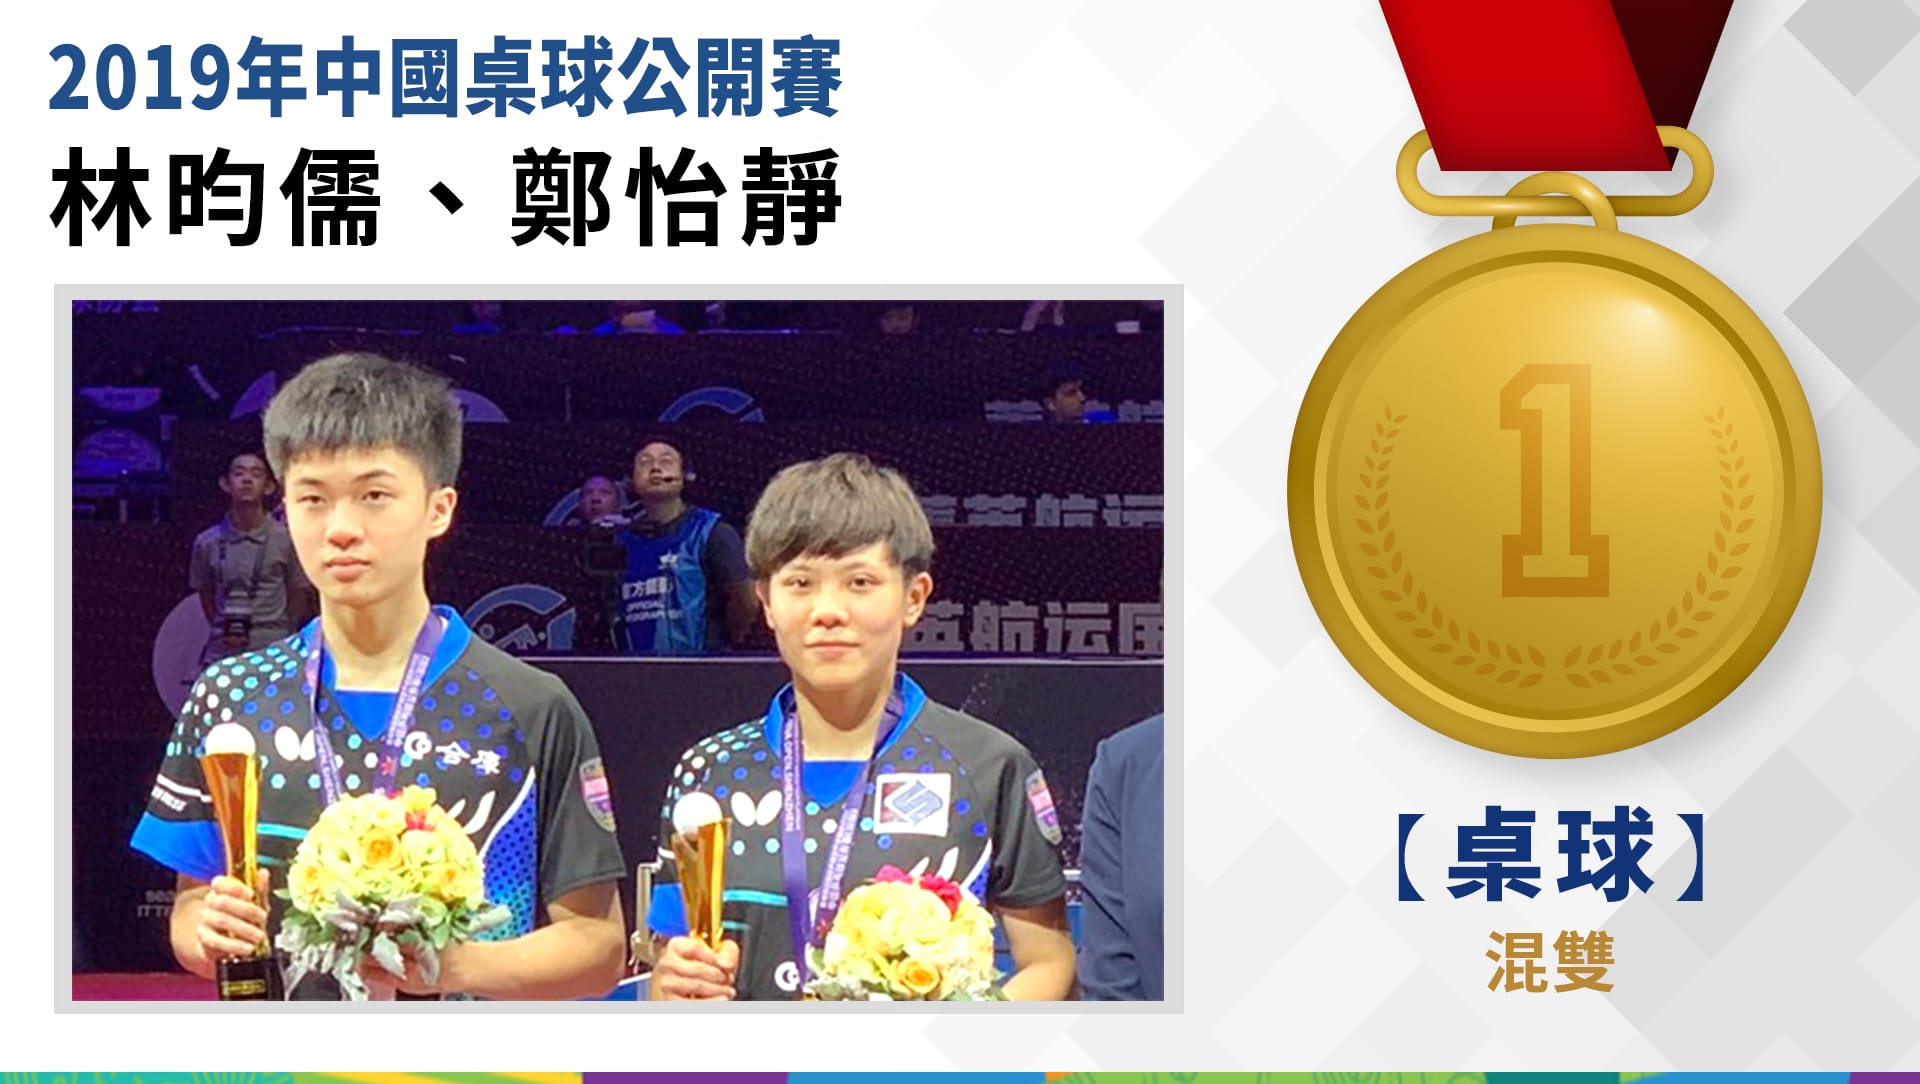 2019年中國桌球公開賽混雙項目  林昀儒、鄭怡靜金牌